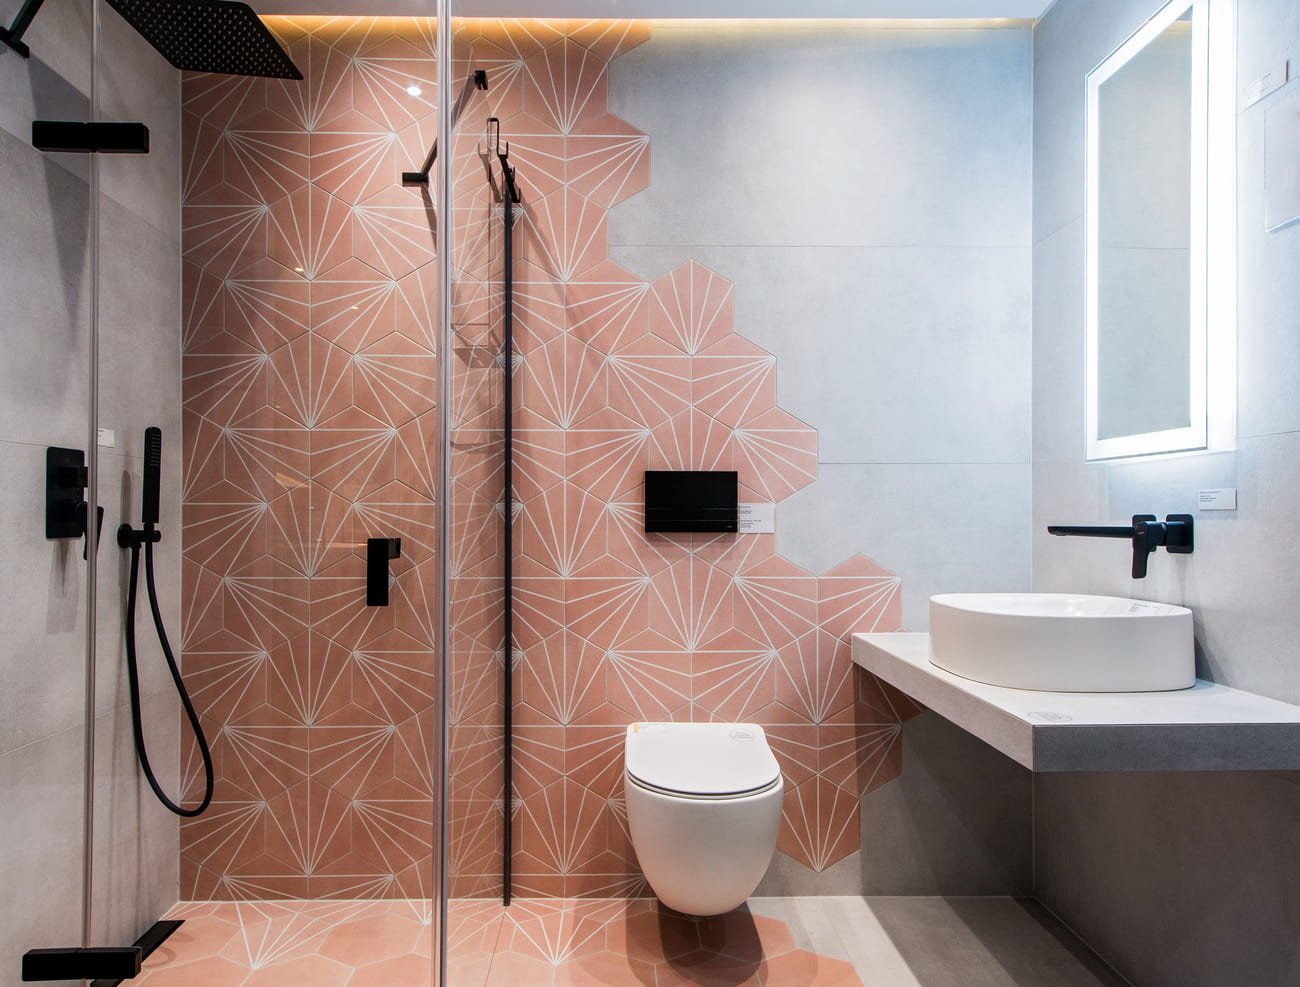 Łazienka z różowymi płytkami heksagonalnymi APE Klen (dekor i baza). Płytki na podłodze i ścianie.